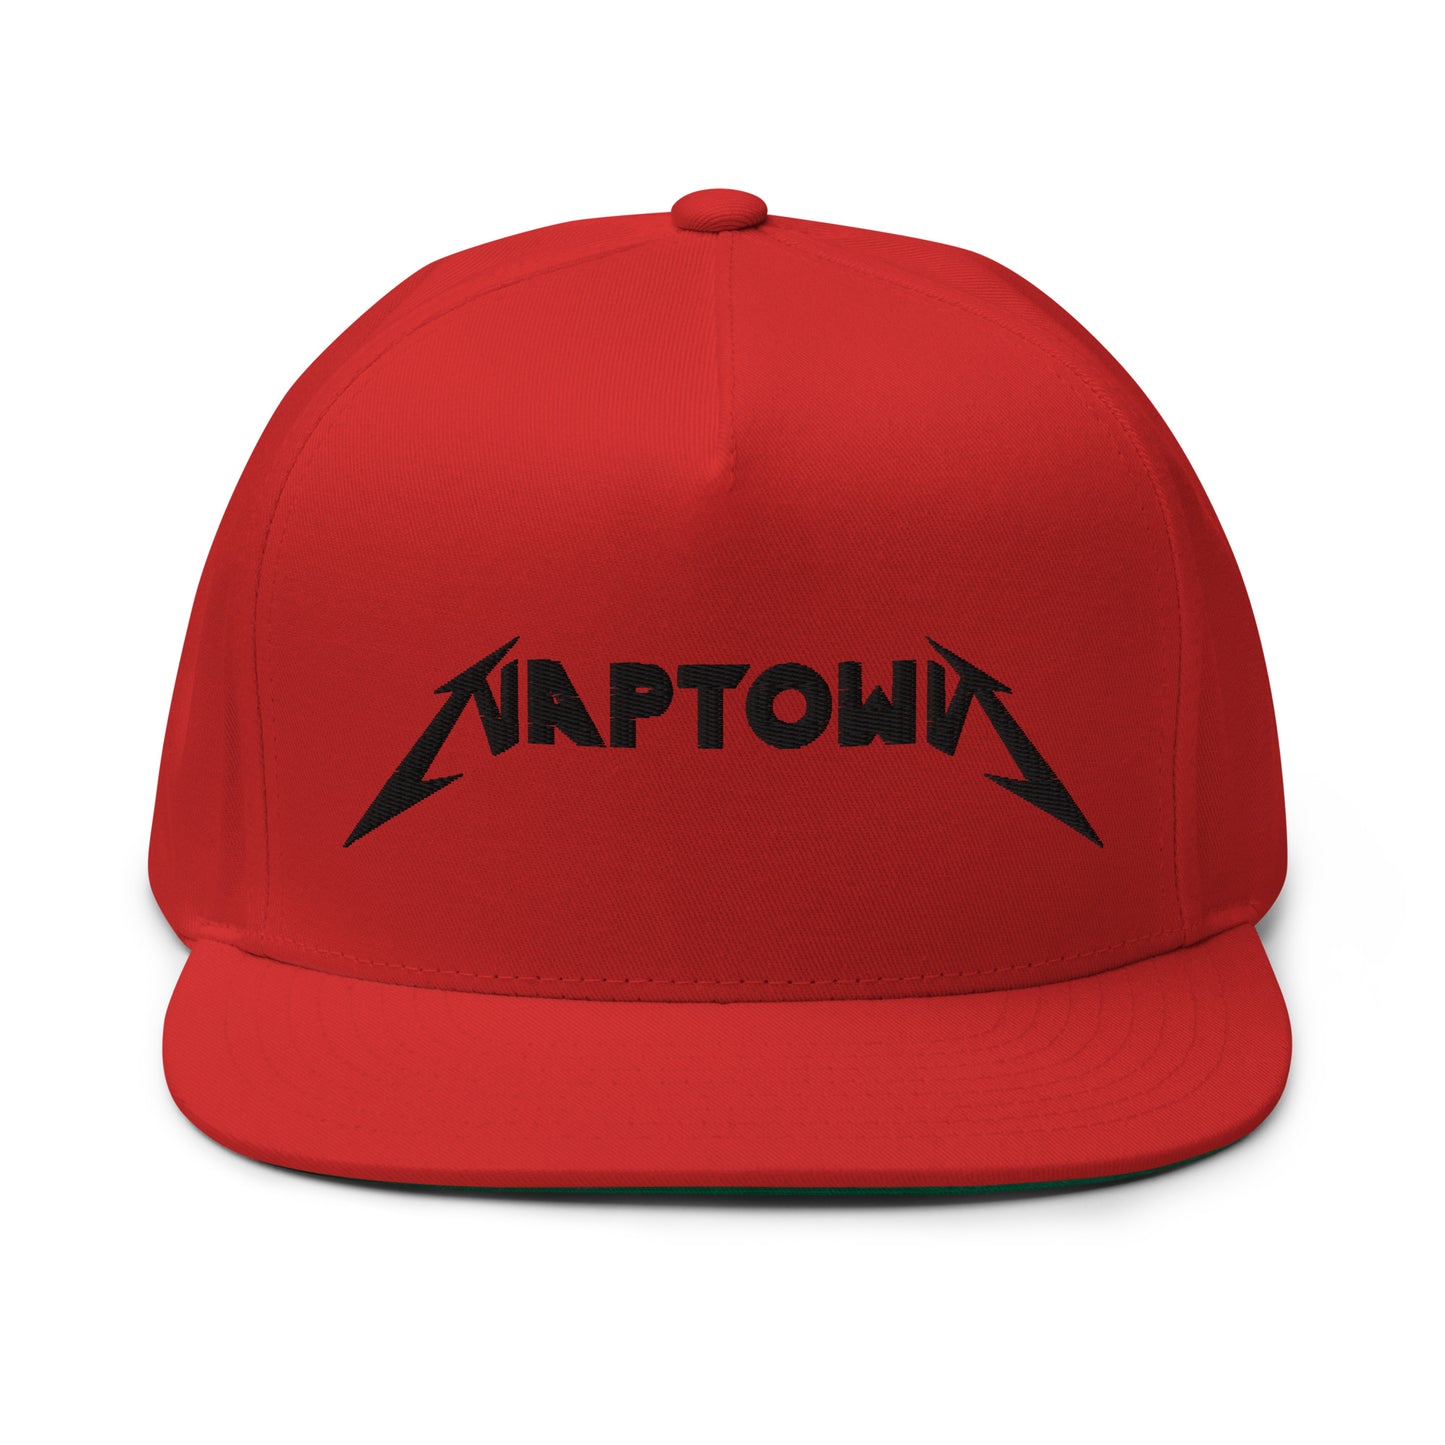 NAPTOWN - Flat Bill Cap